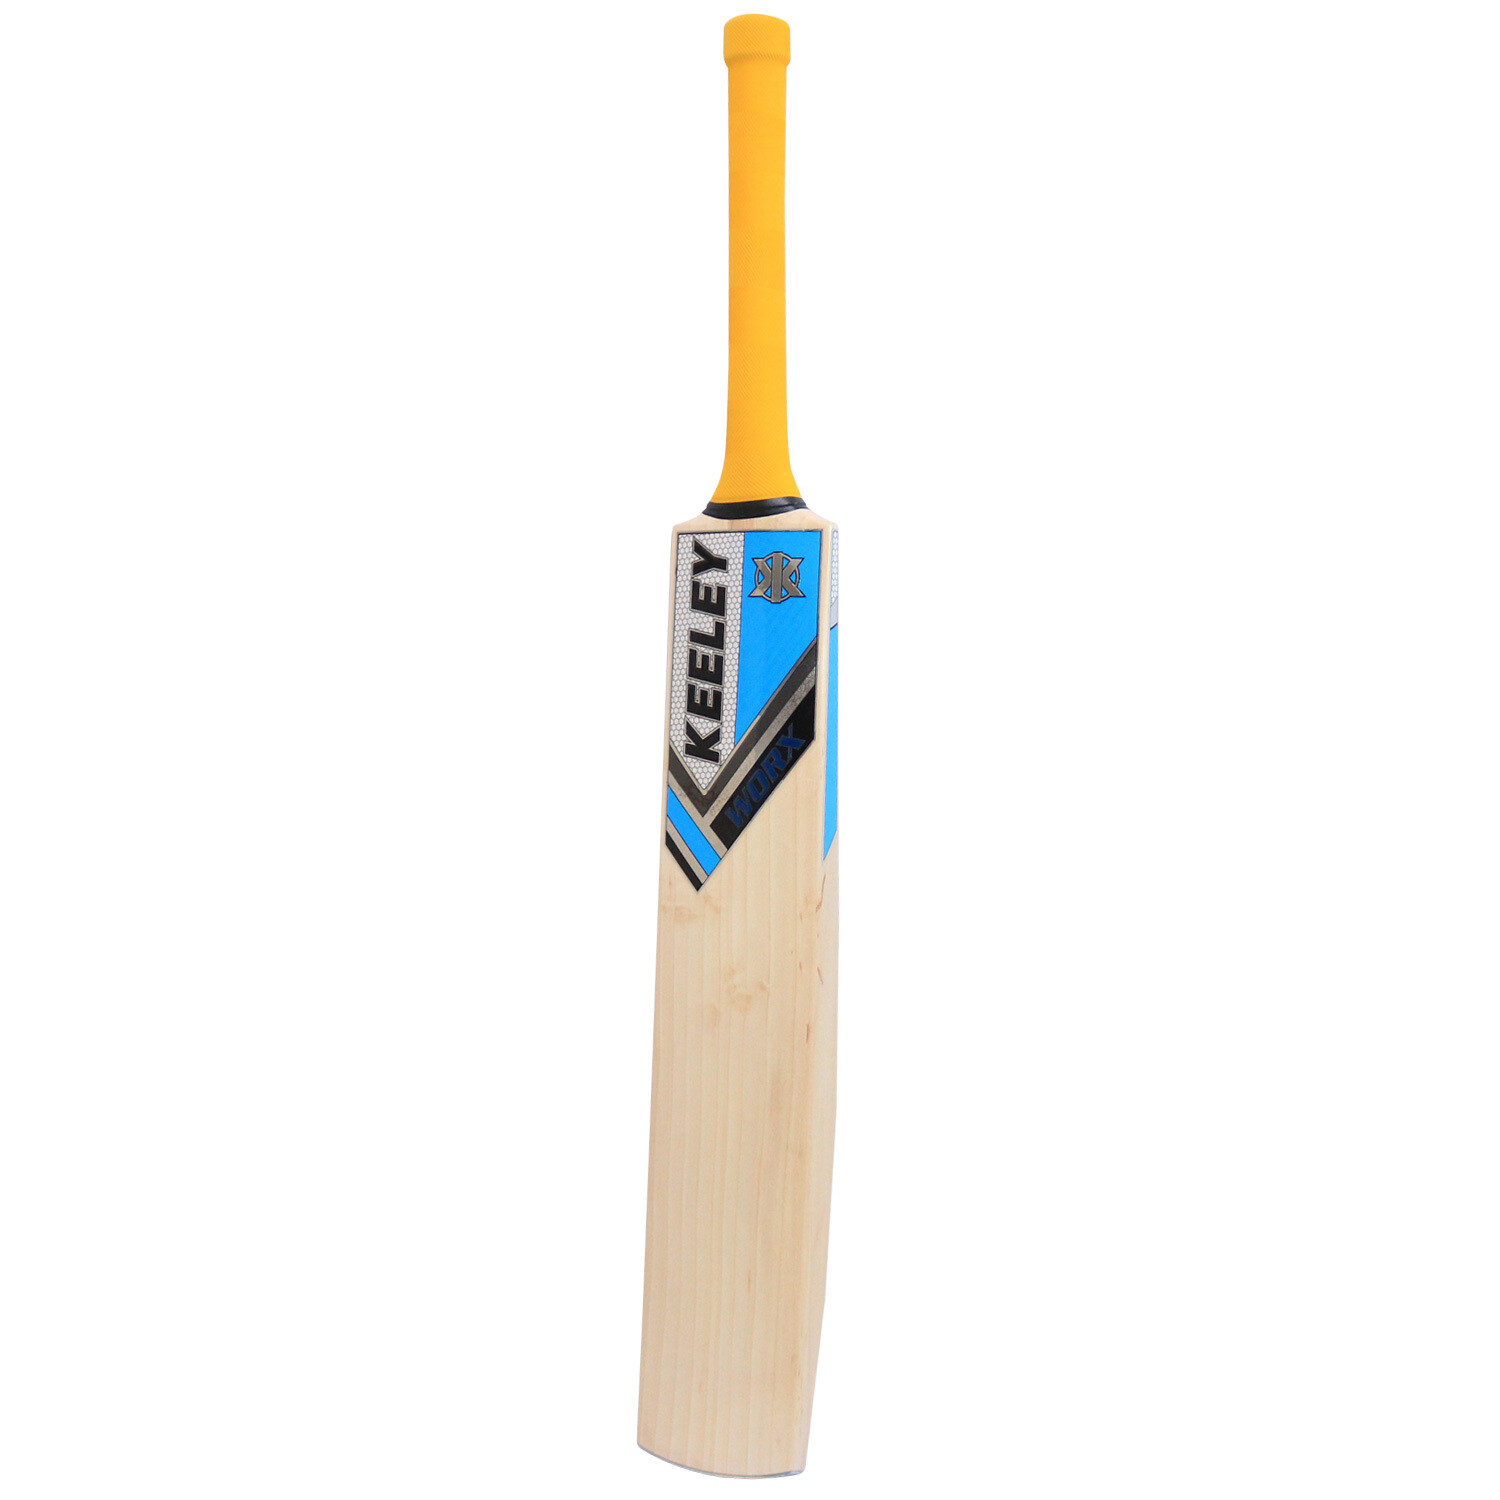 2022 Keeley Worx Grade II Adult Cricket Bat